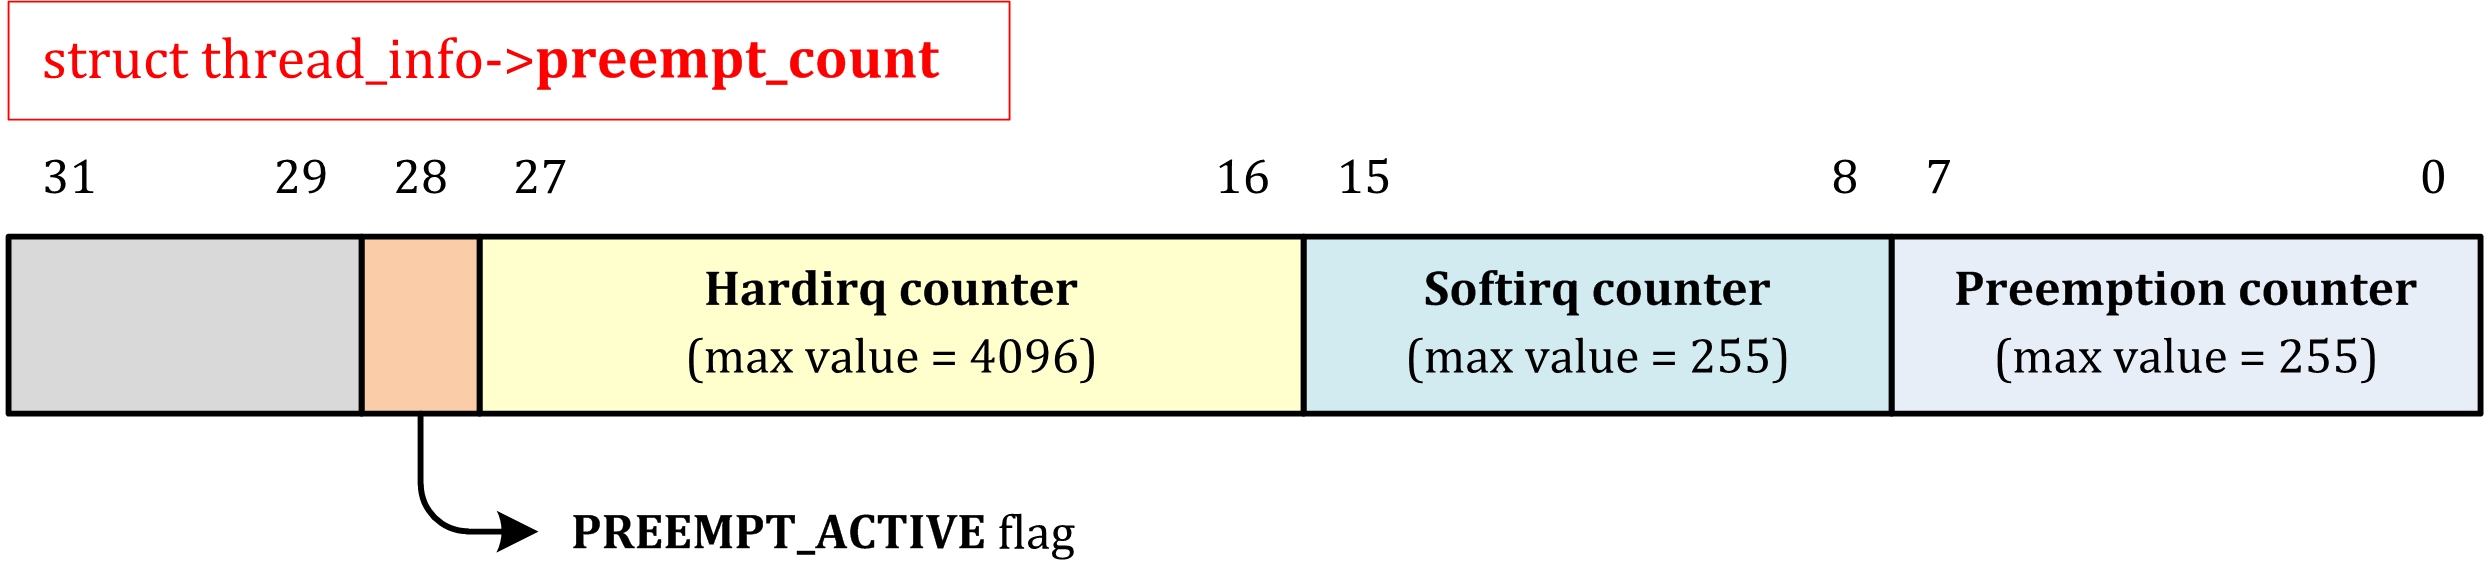 bcm4360 linux kernel 4.4.0-66